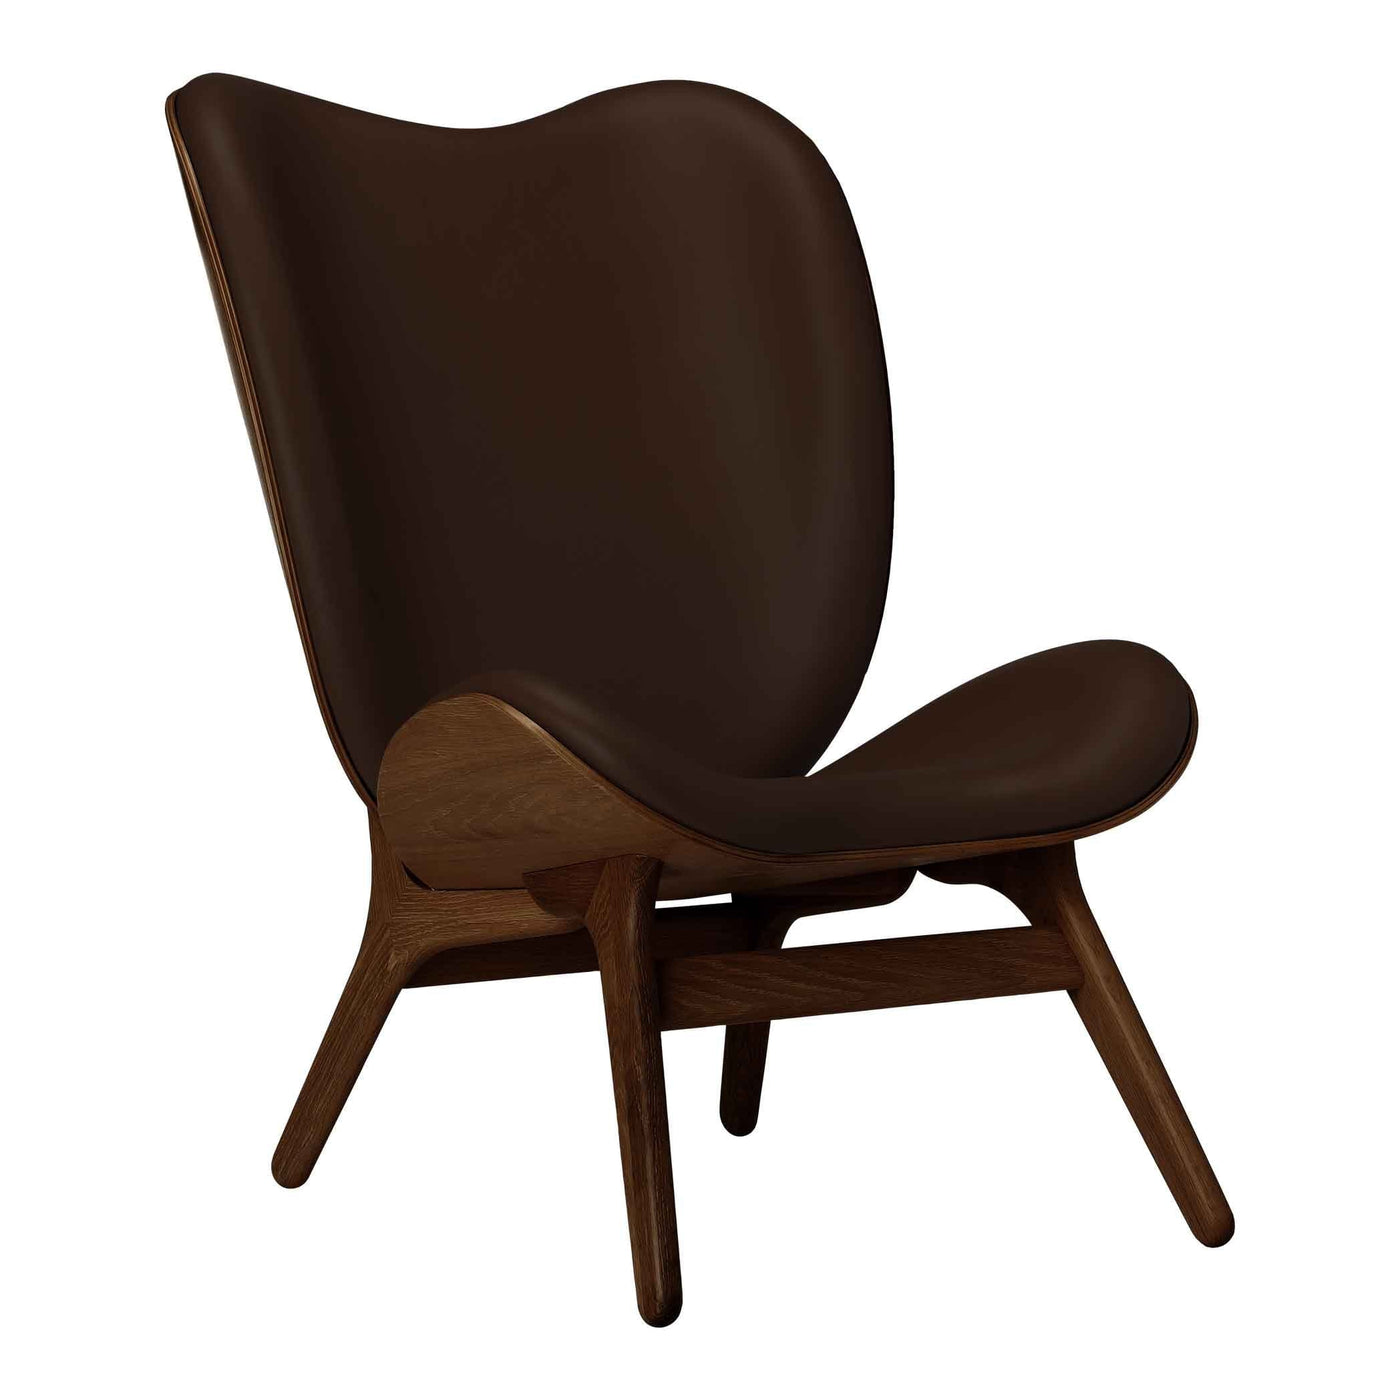 Umage A Conversation Piece Tall, fauteuil confortable avec dossier haut, en bois et tissu, chêne foncé, cuir brun